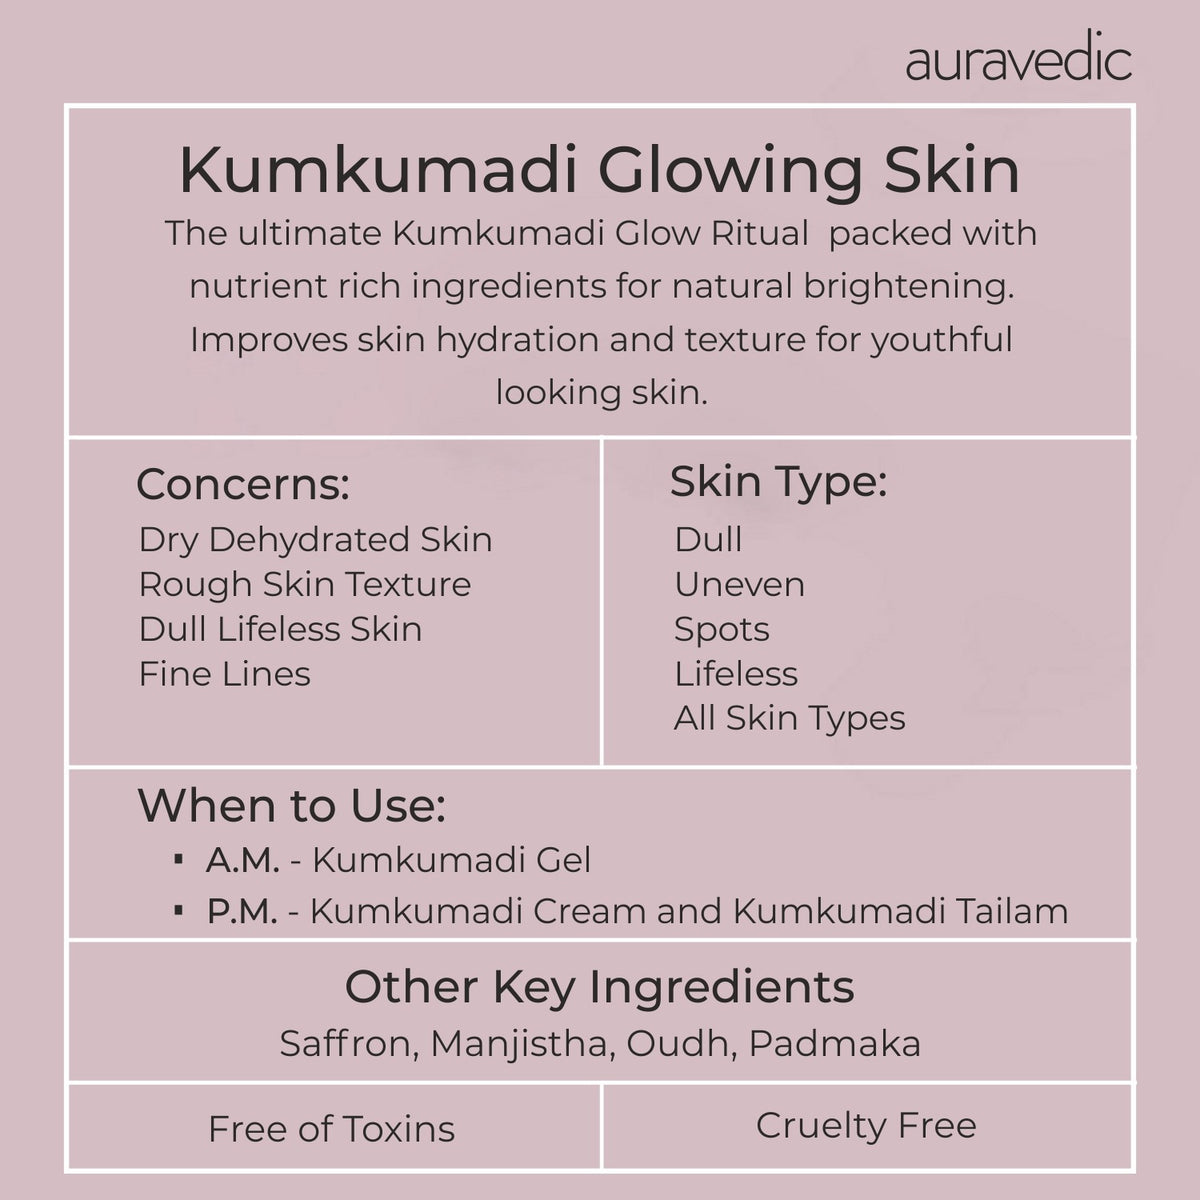 Kumkumadi Glowing Skin